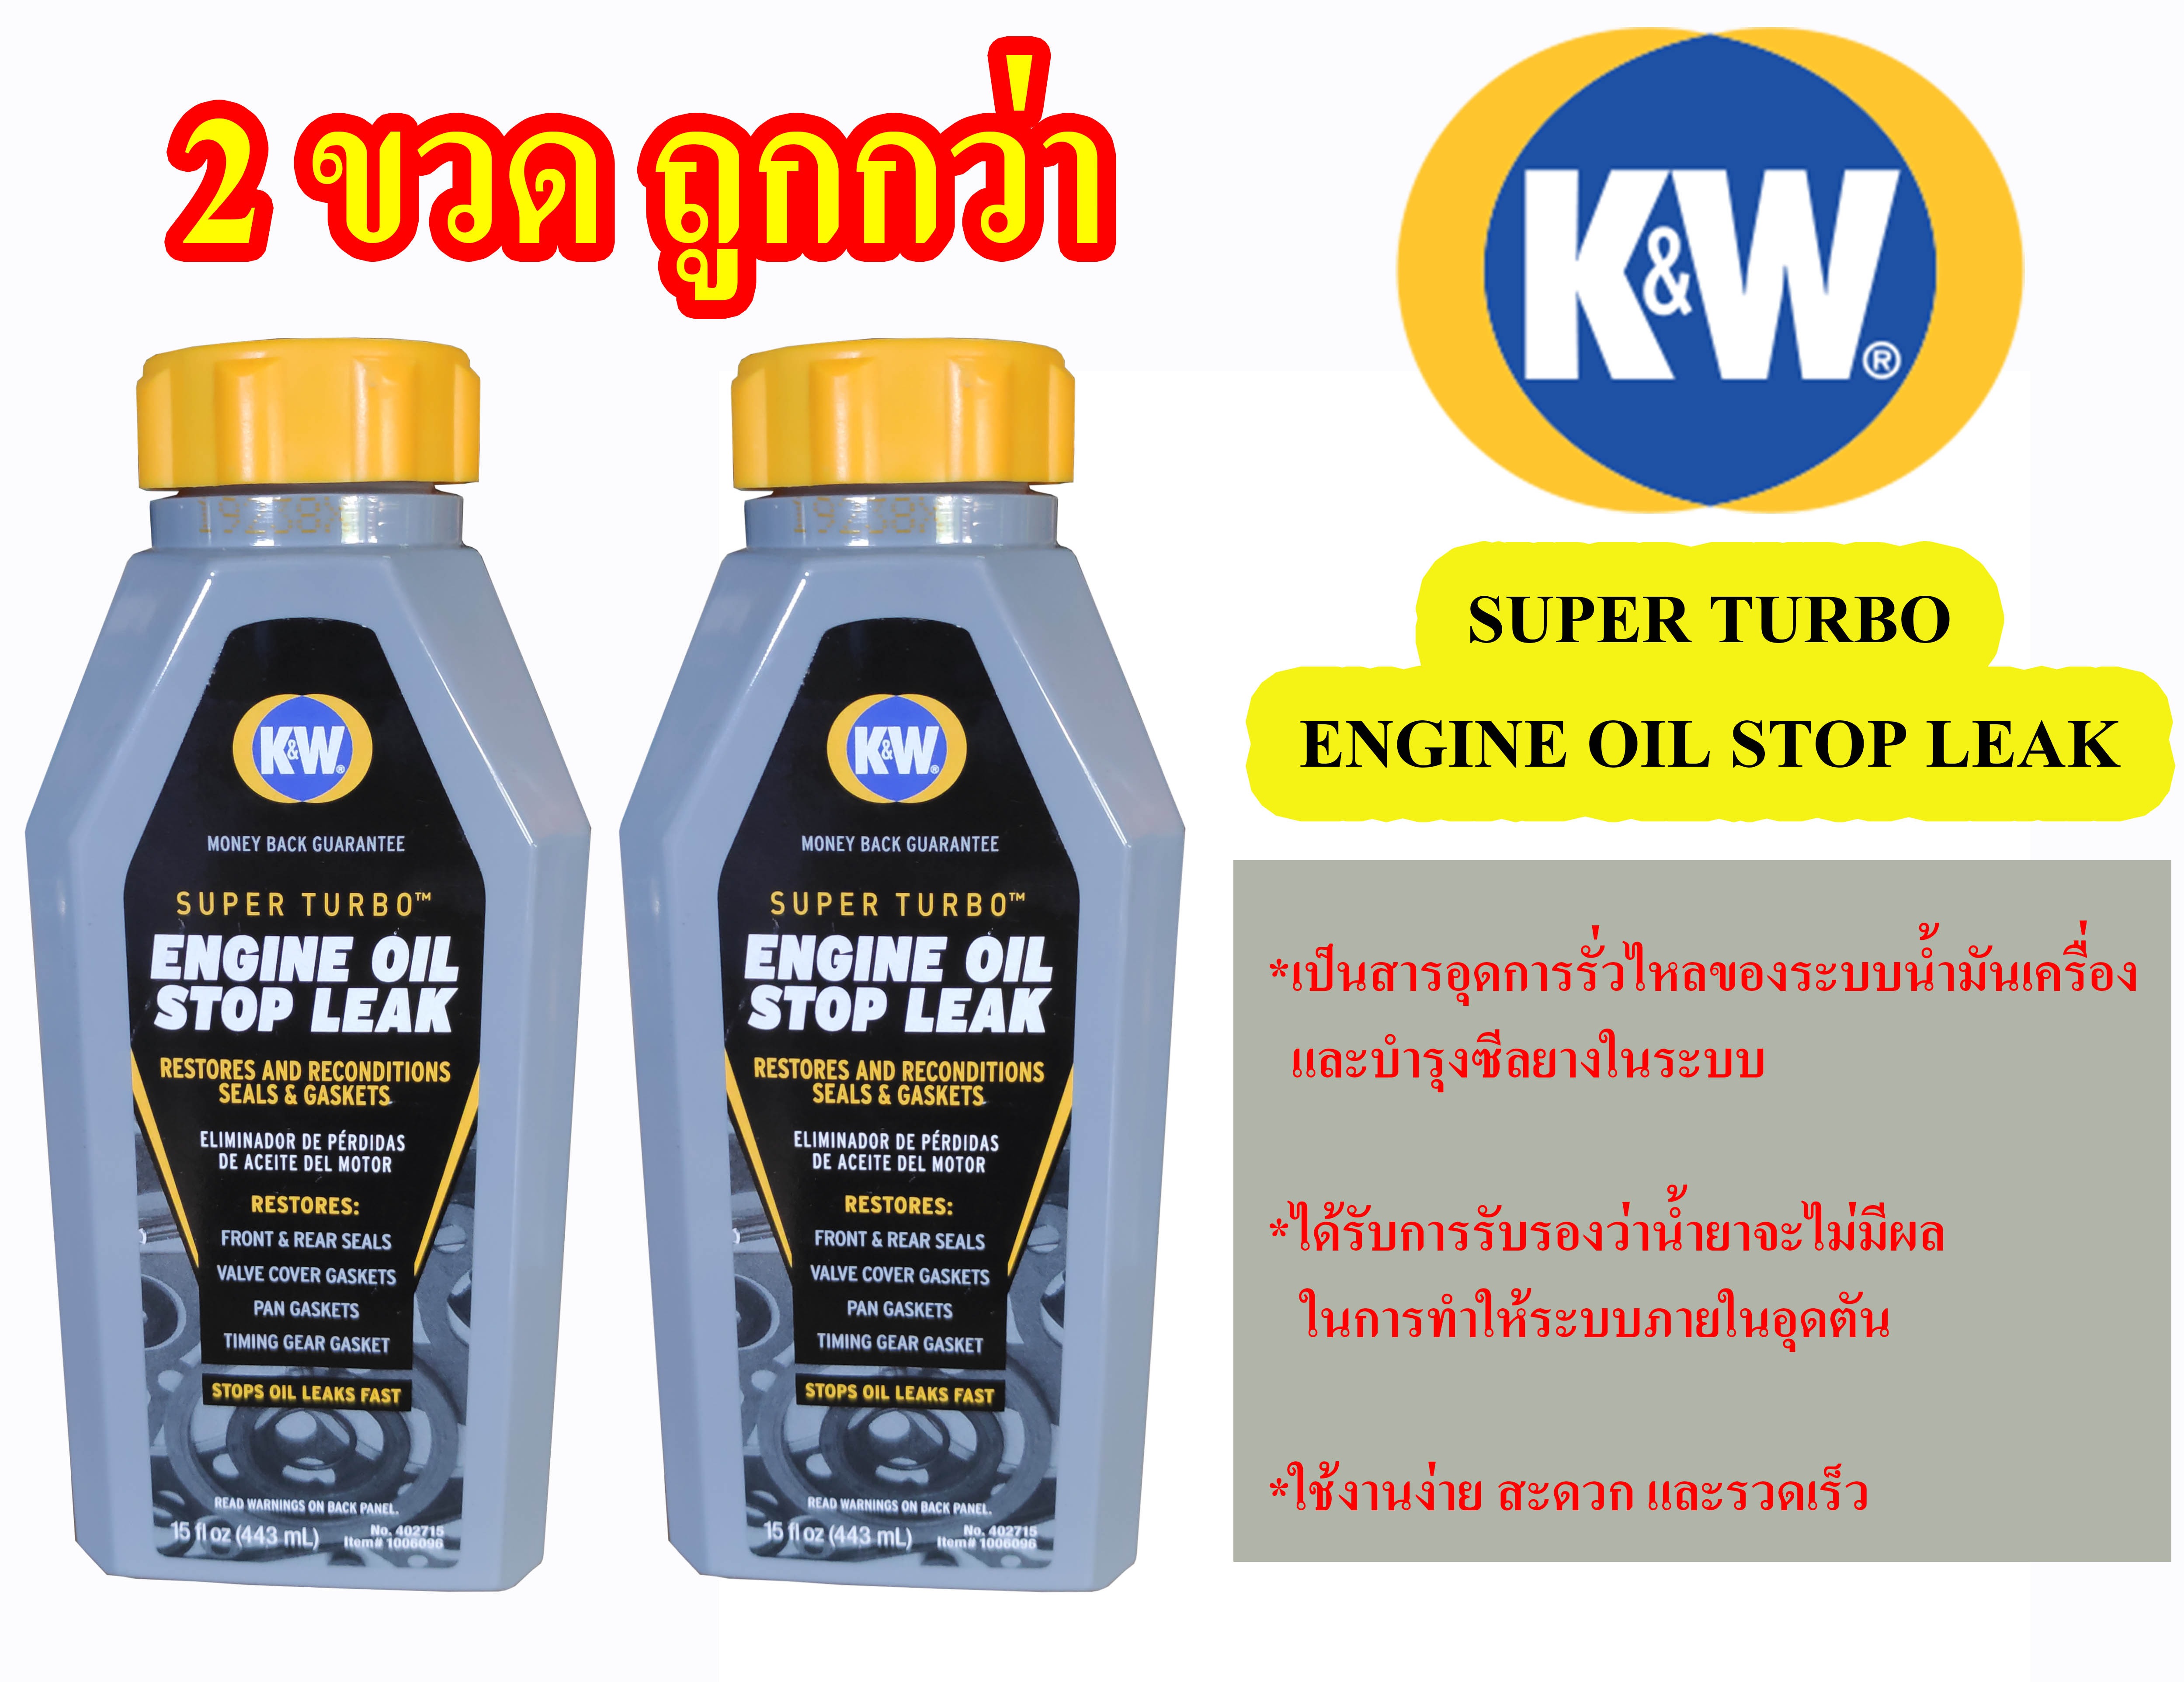 2 ขวด ถูกกว่า K&W น้ำยาบำรุงและซ่อมแซมการรั่วซึมของระบบน้ำมันเครื่อง SUPER TURBO ENGINE OIL STOP LEAK CRC 443 ml.